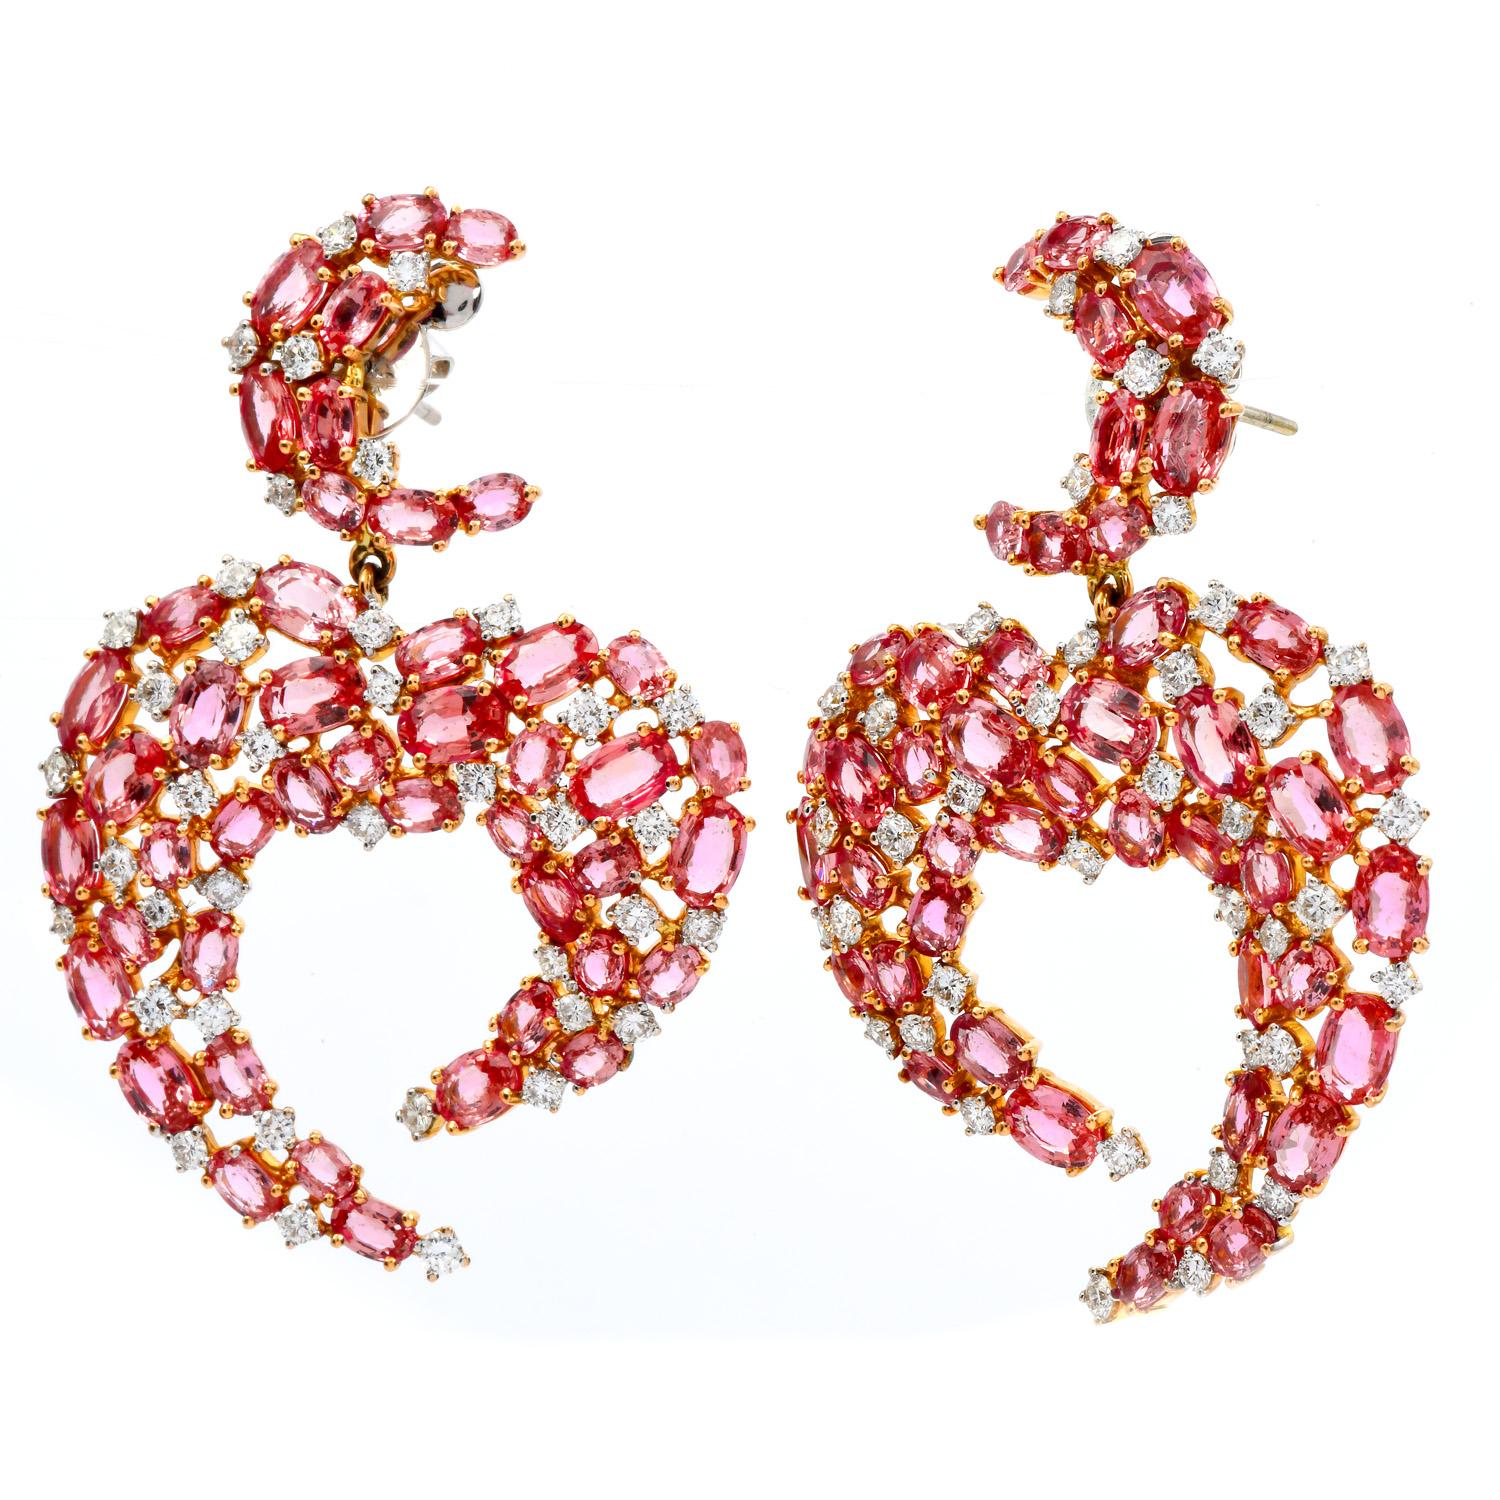 Vivid Pink Sapphire & Diamond Half Moon Heart Dangle Earrings.

Handgefertigt in massivem 18K Gelbgold mit Weißgold Akzente, gibt es (78) Rundschliff Zentrum Diamanten mit einem Gewicht von etwa 3,50 Karat (F-G Farbe und VS Klarheit)

Für die